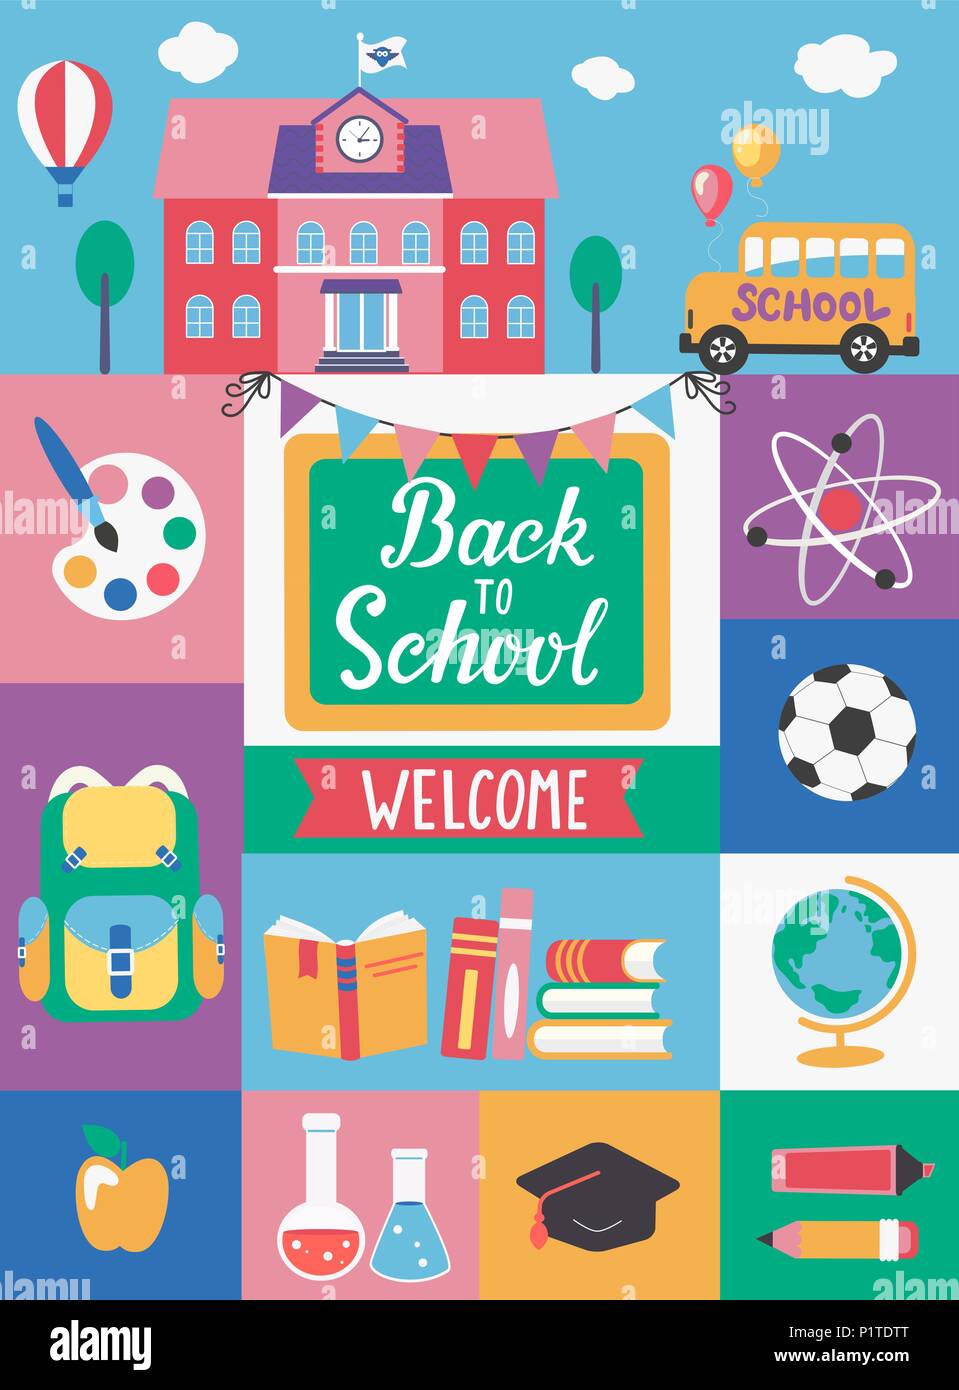 Un cartel de bienvenida de vuelta a la escuela que dice bienvenido